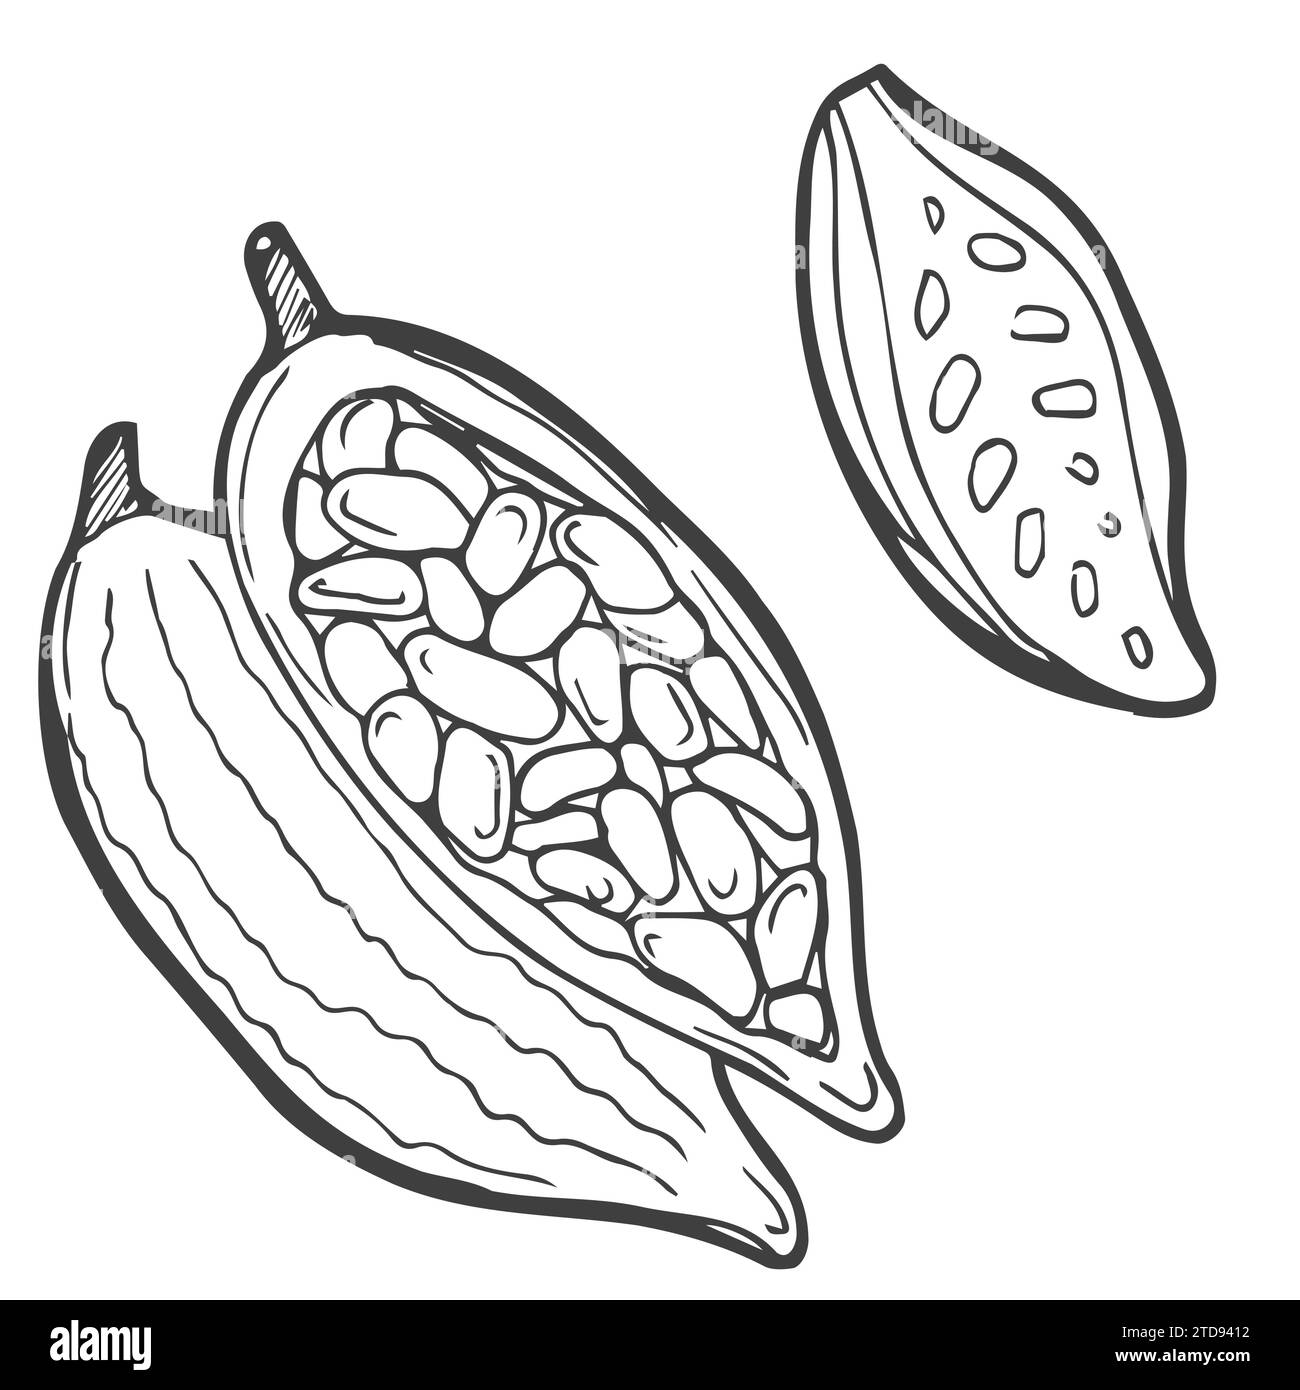 Schizzo delle piante di cacao. Illustrazione disegnata a mano convertita Illustrazione Vettoriale